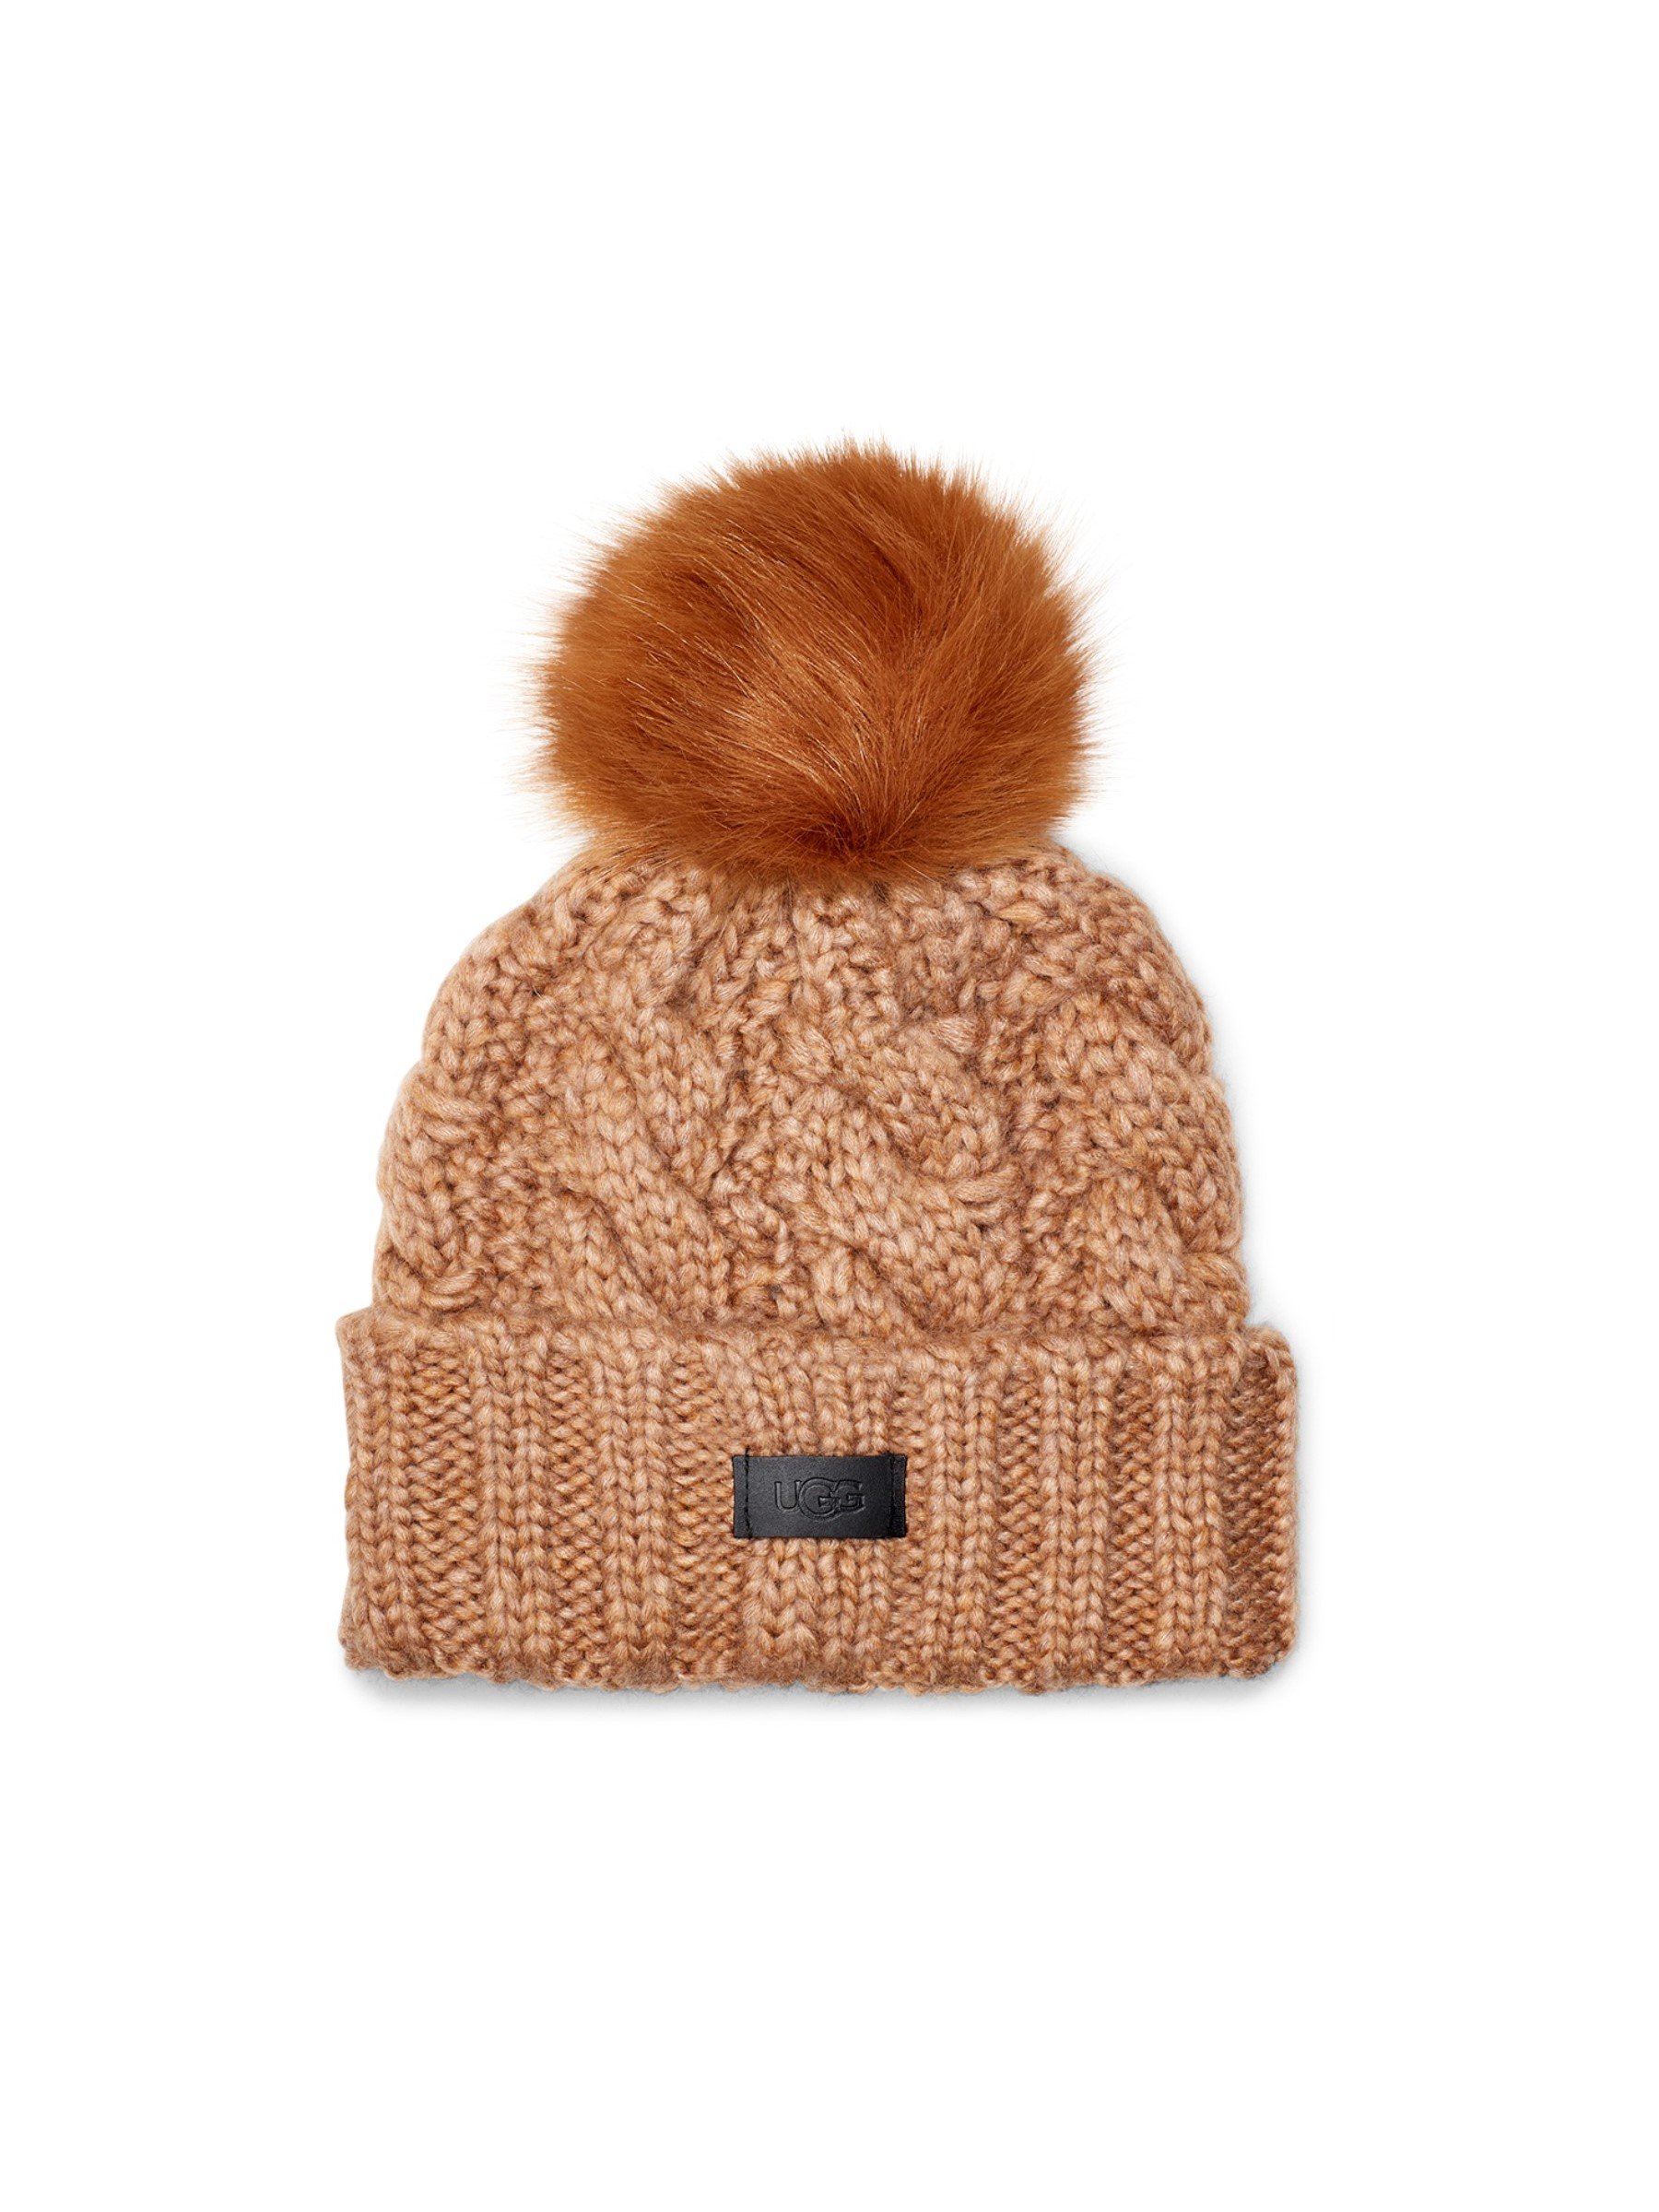 

UGG Шапка W Knit Cable Hat W F Fur Pom, Коричневый